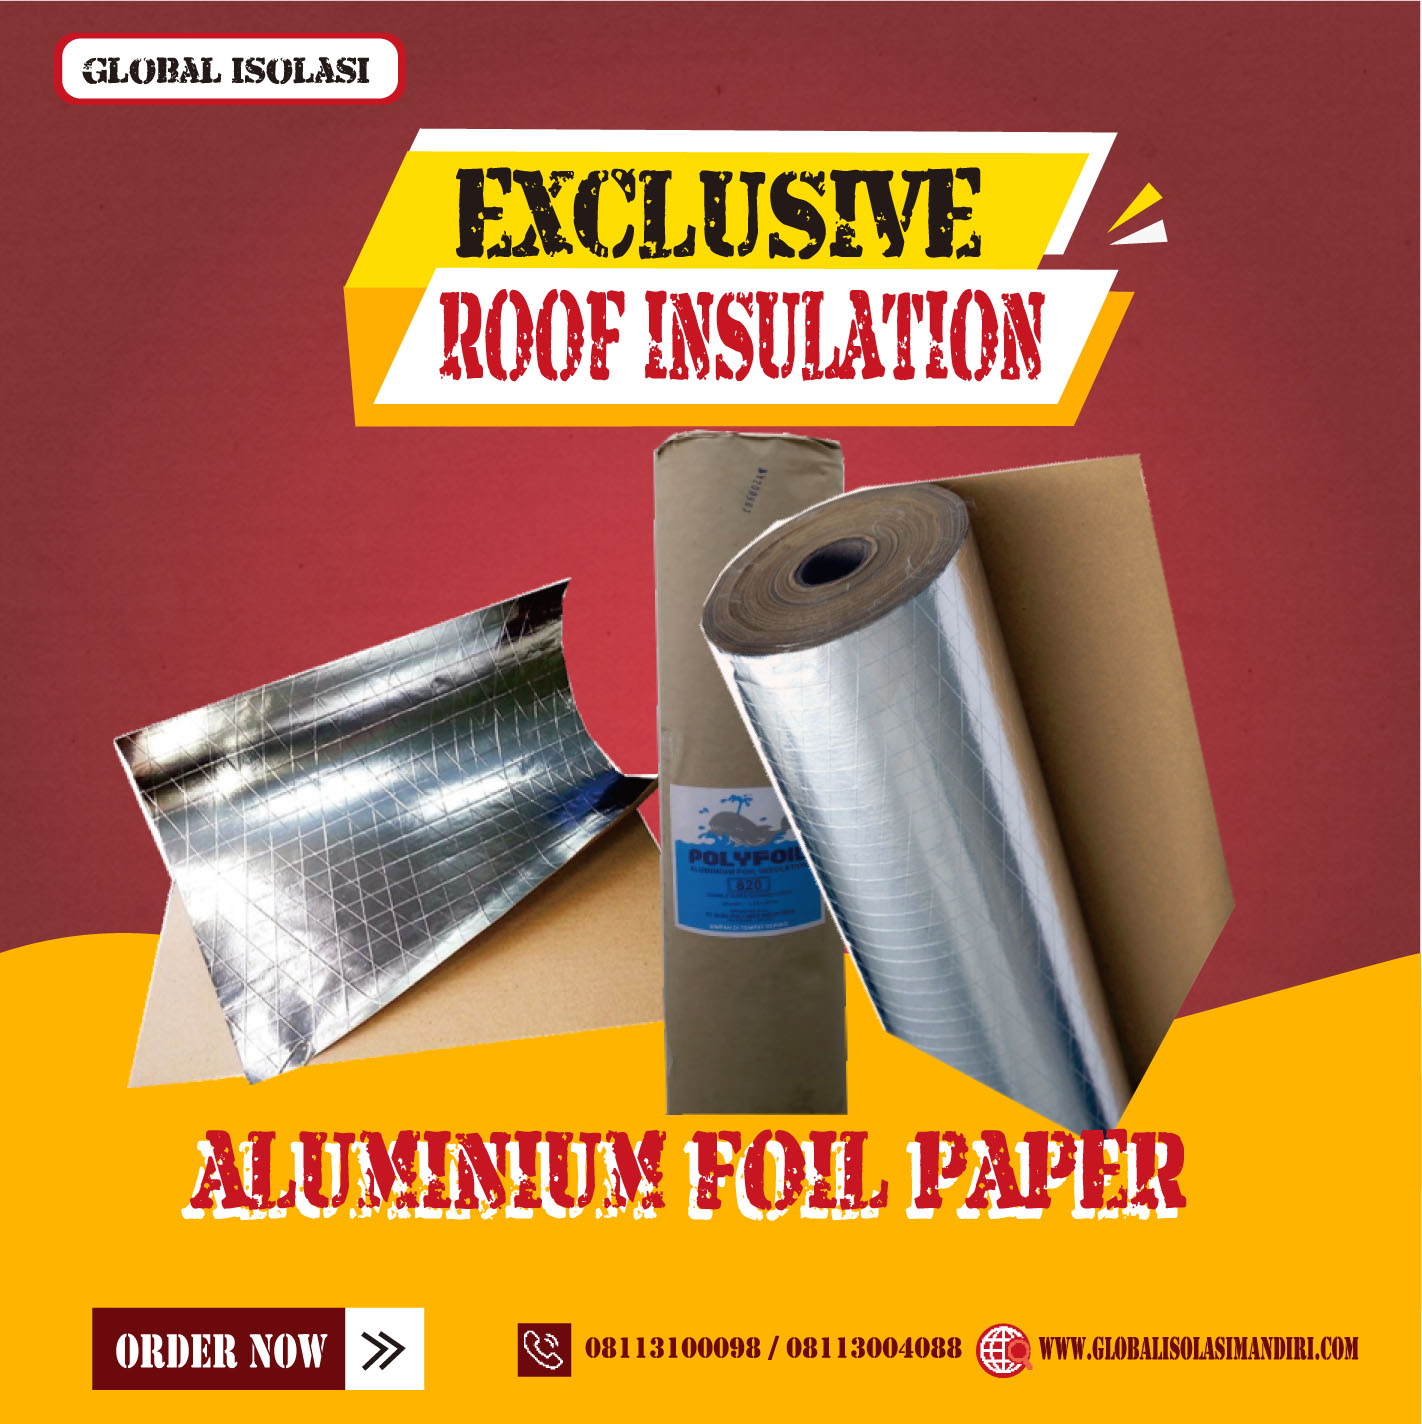 aluminium foil paper 12